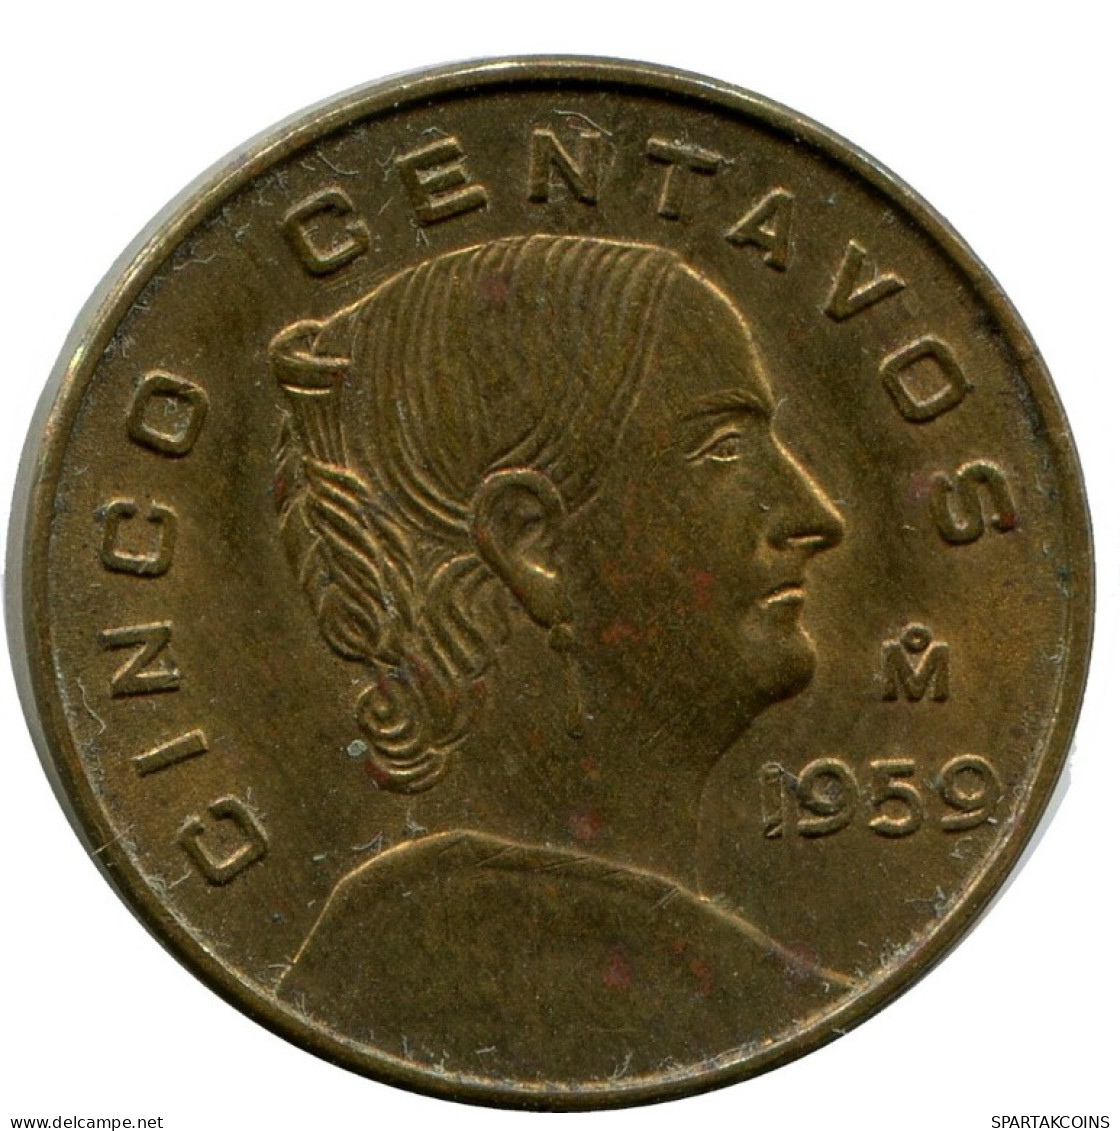 5 CENTAVOS 1959 MEXICO Coin #AH439.5.U.A - Messico